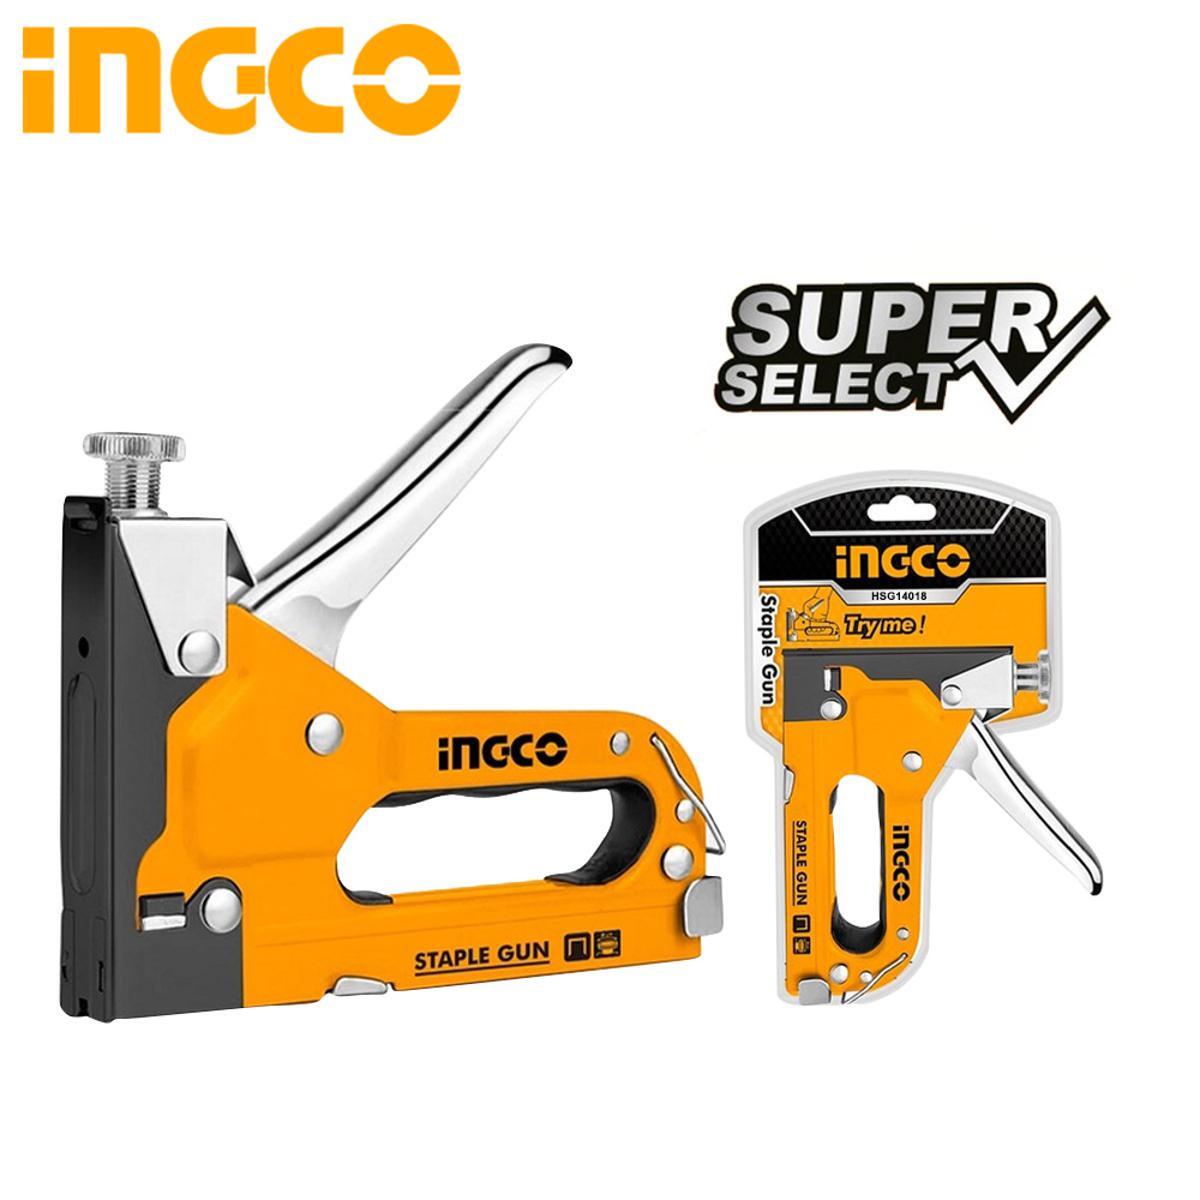 Степлер механический INGCO HSG14018